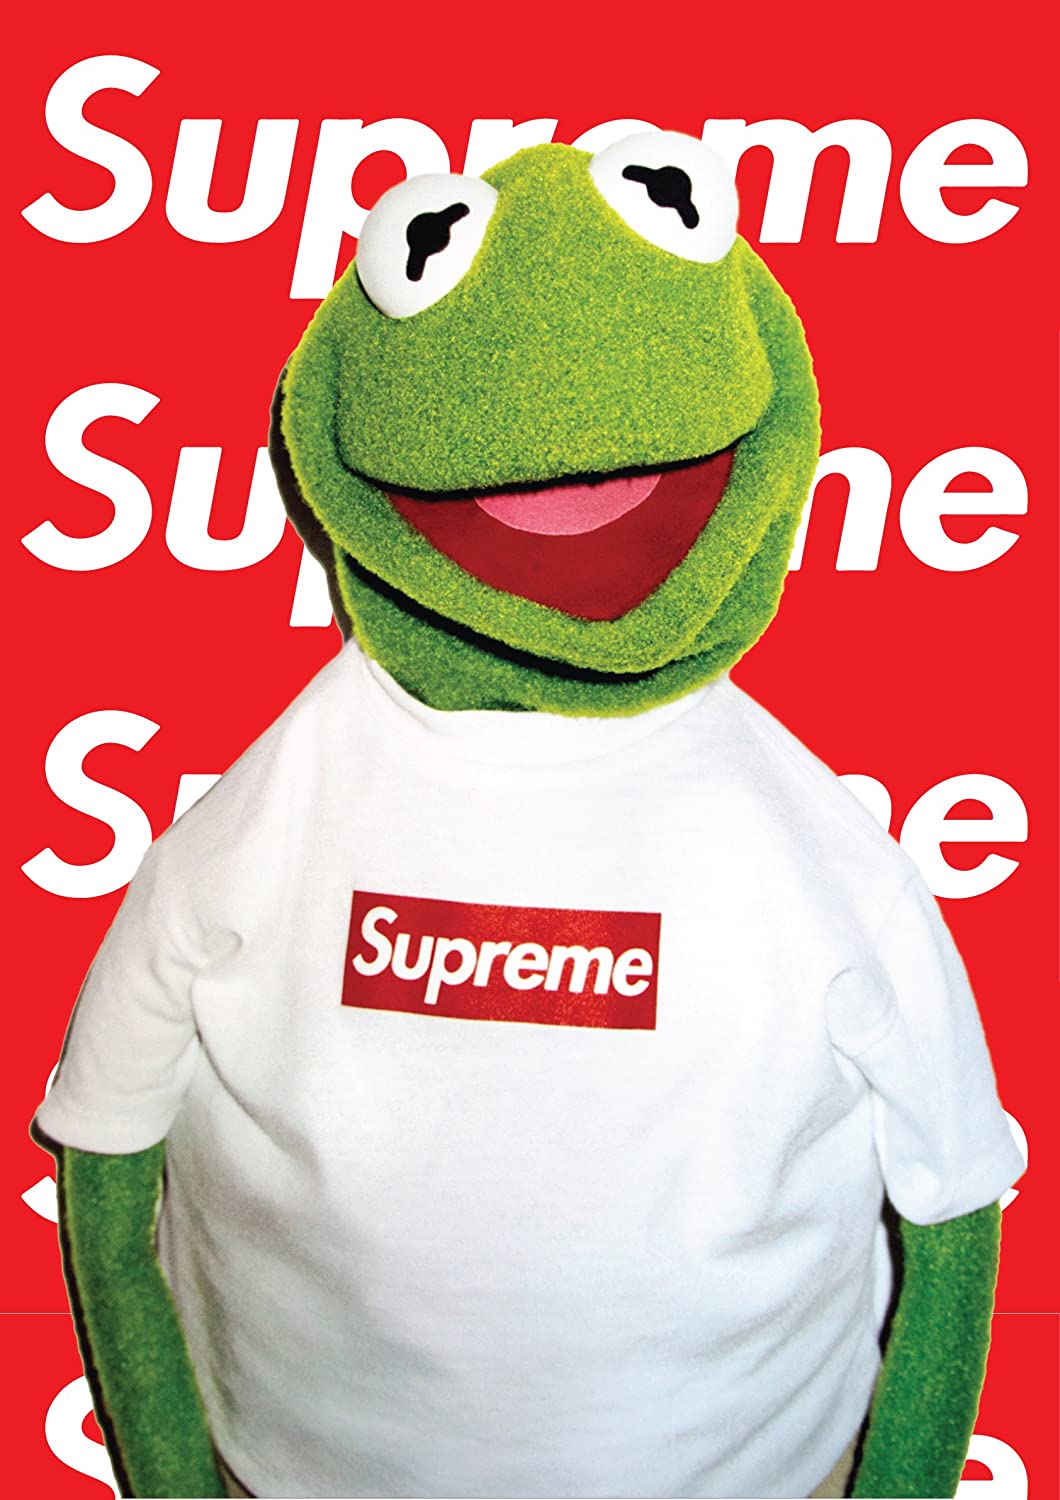 Supreme Kermit Wallpaper